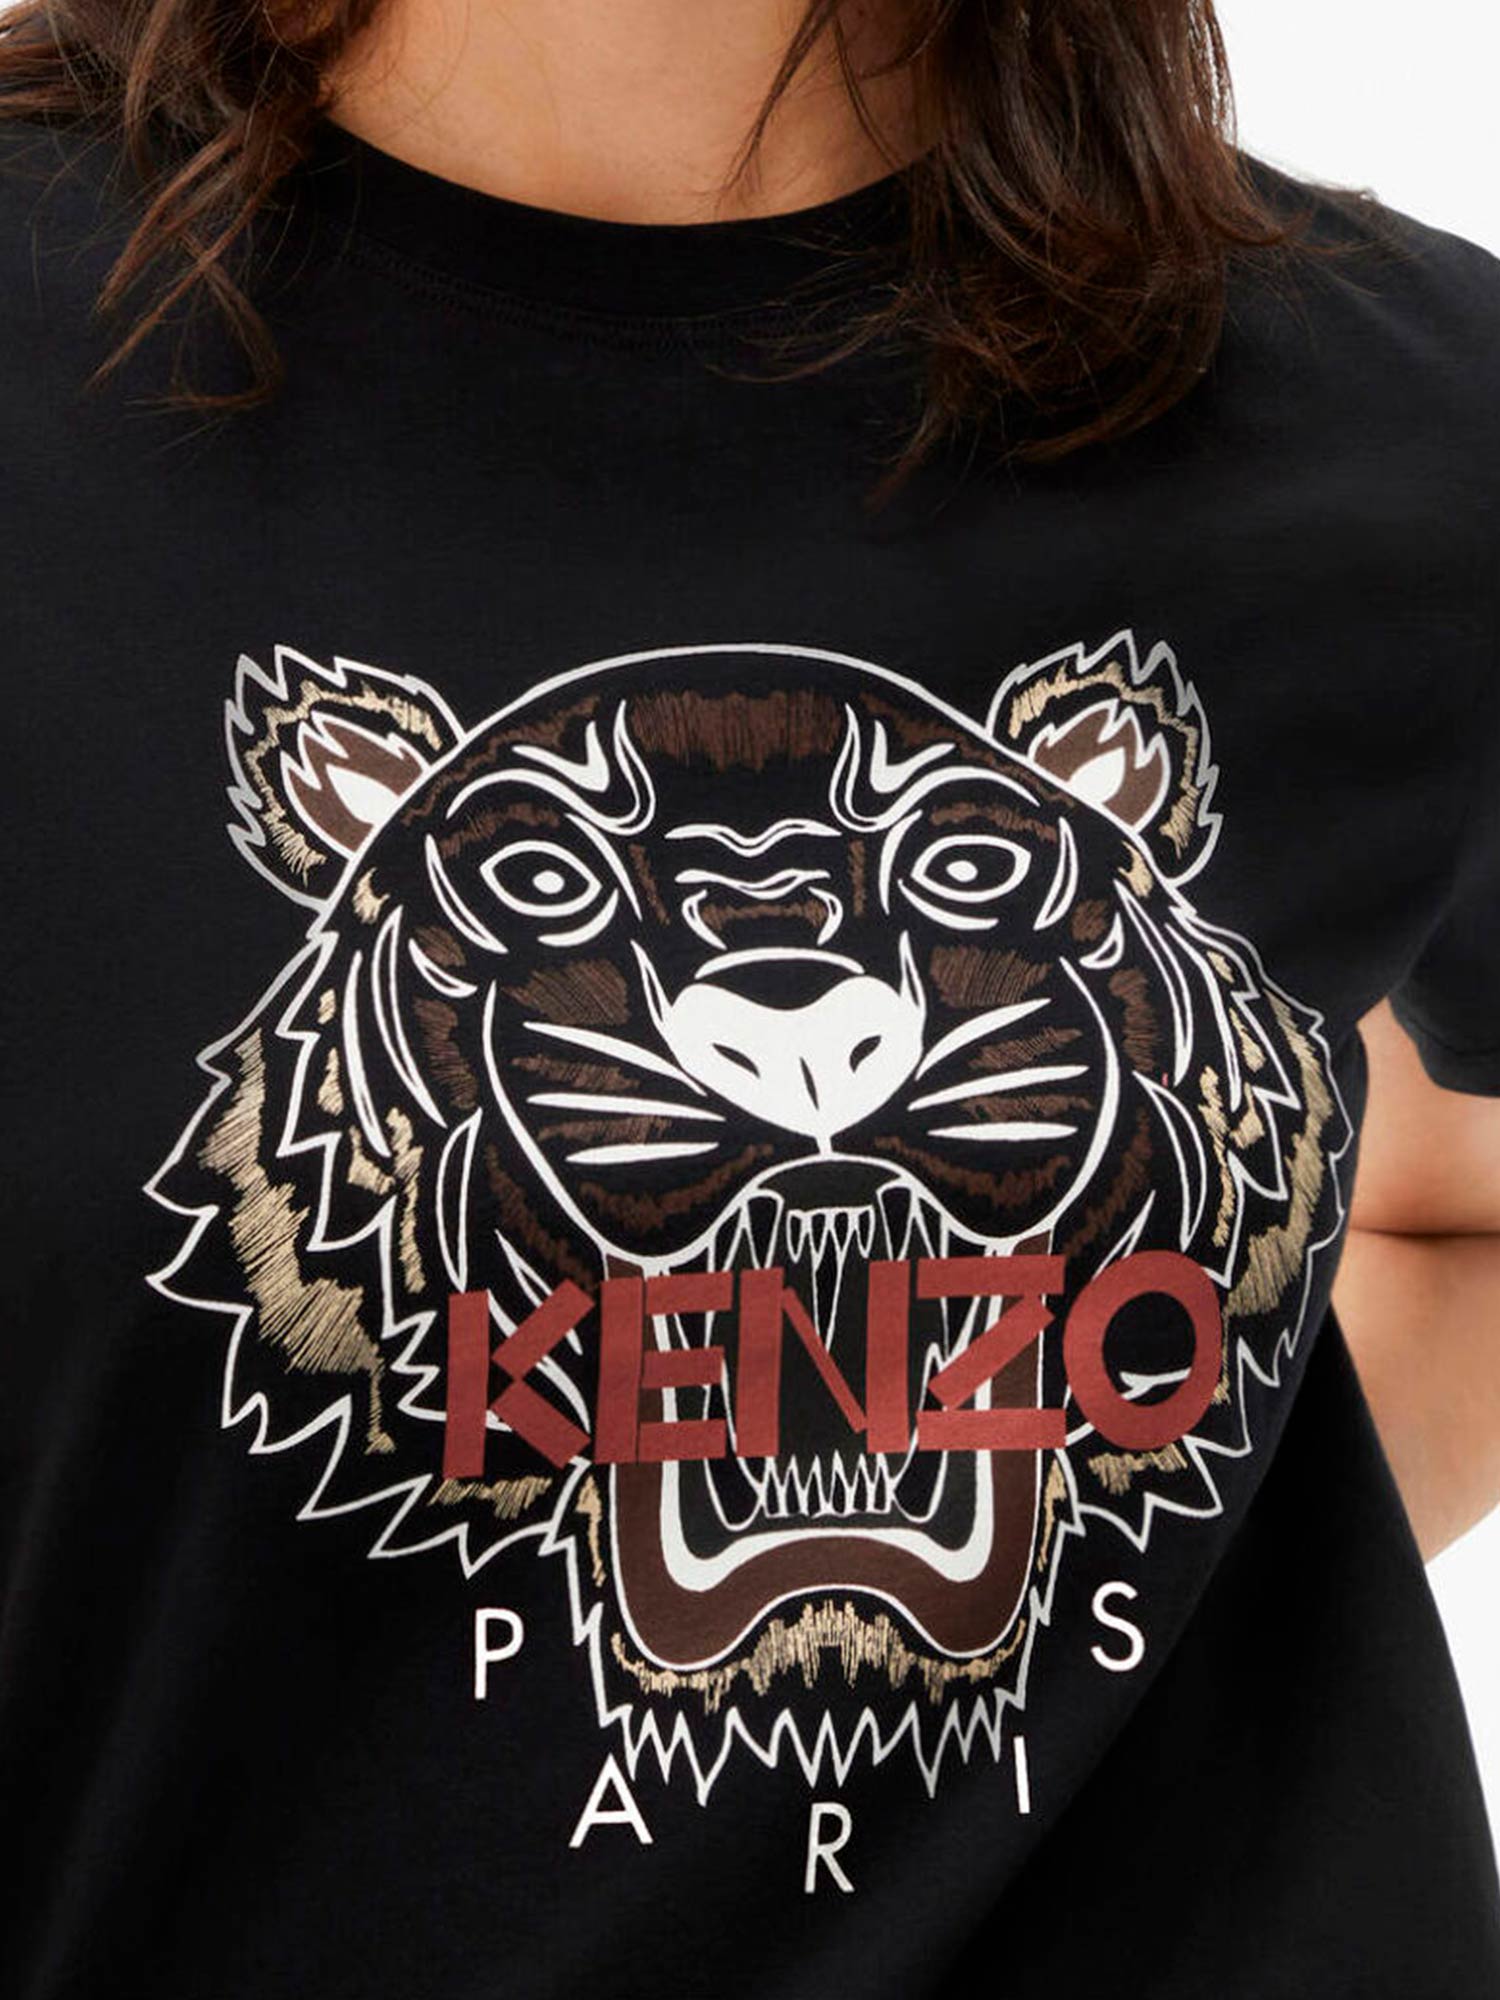 Camiseta de mujer tigre multicolor • Dolce Vita Boutique